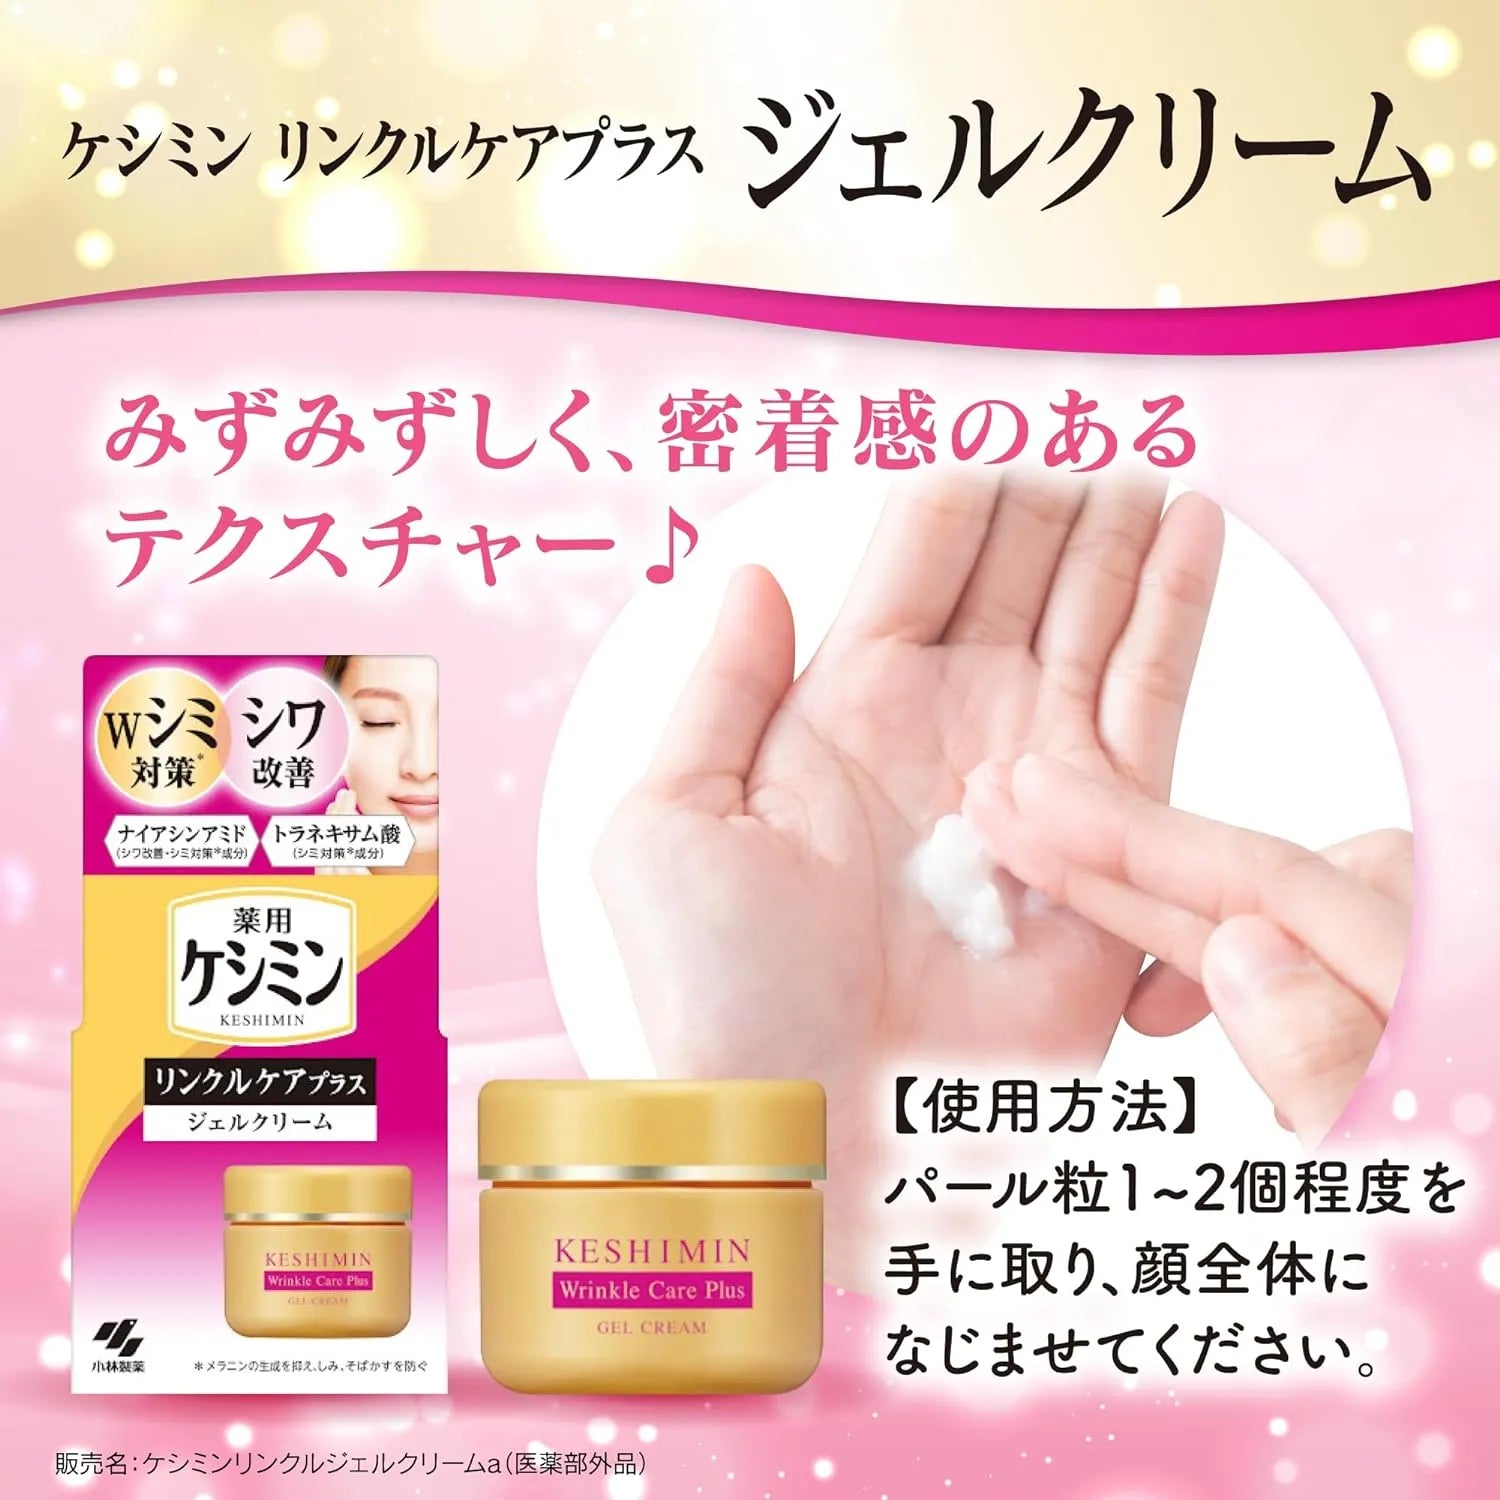 Keshimin Wrinkle Care Plus Gel Cream 50g - Buy Me Japan